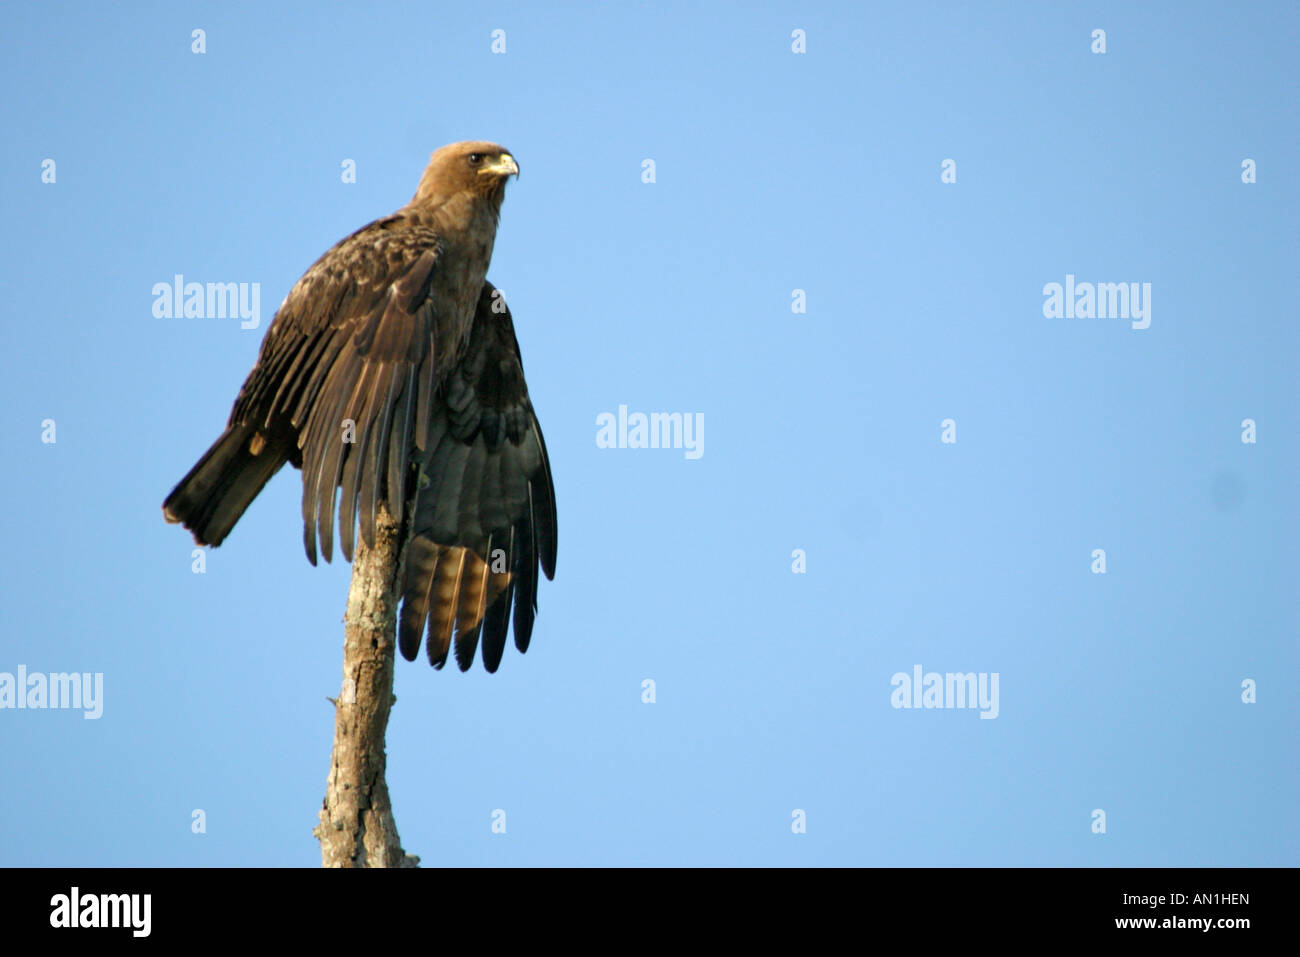 Retrato de un águila de Wahlberg encaramado sobre un árbol con sus alas extendidas Foto de stock